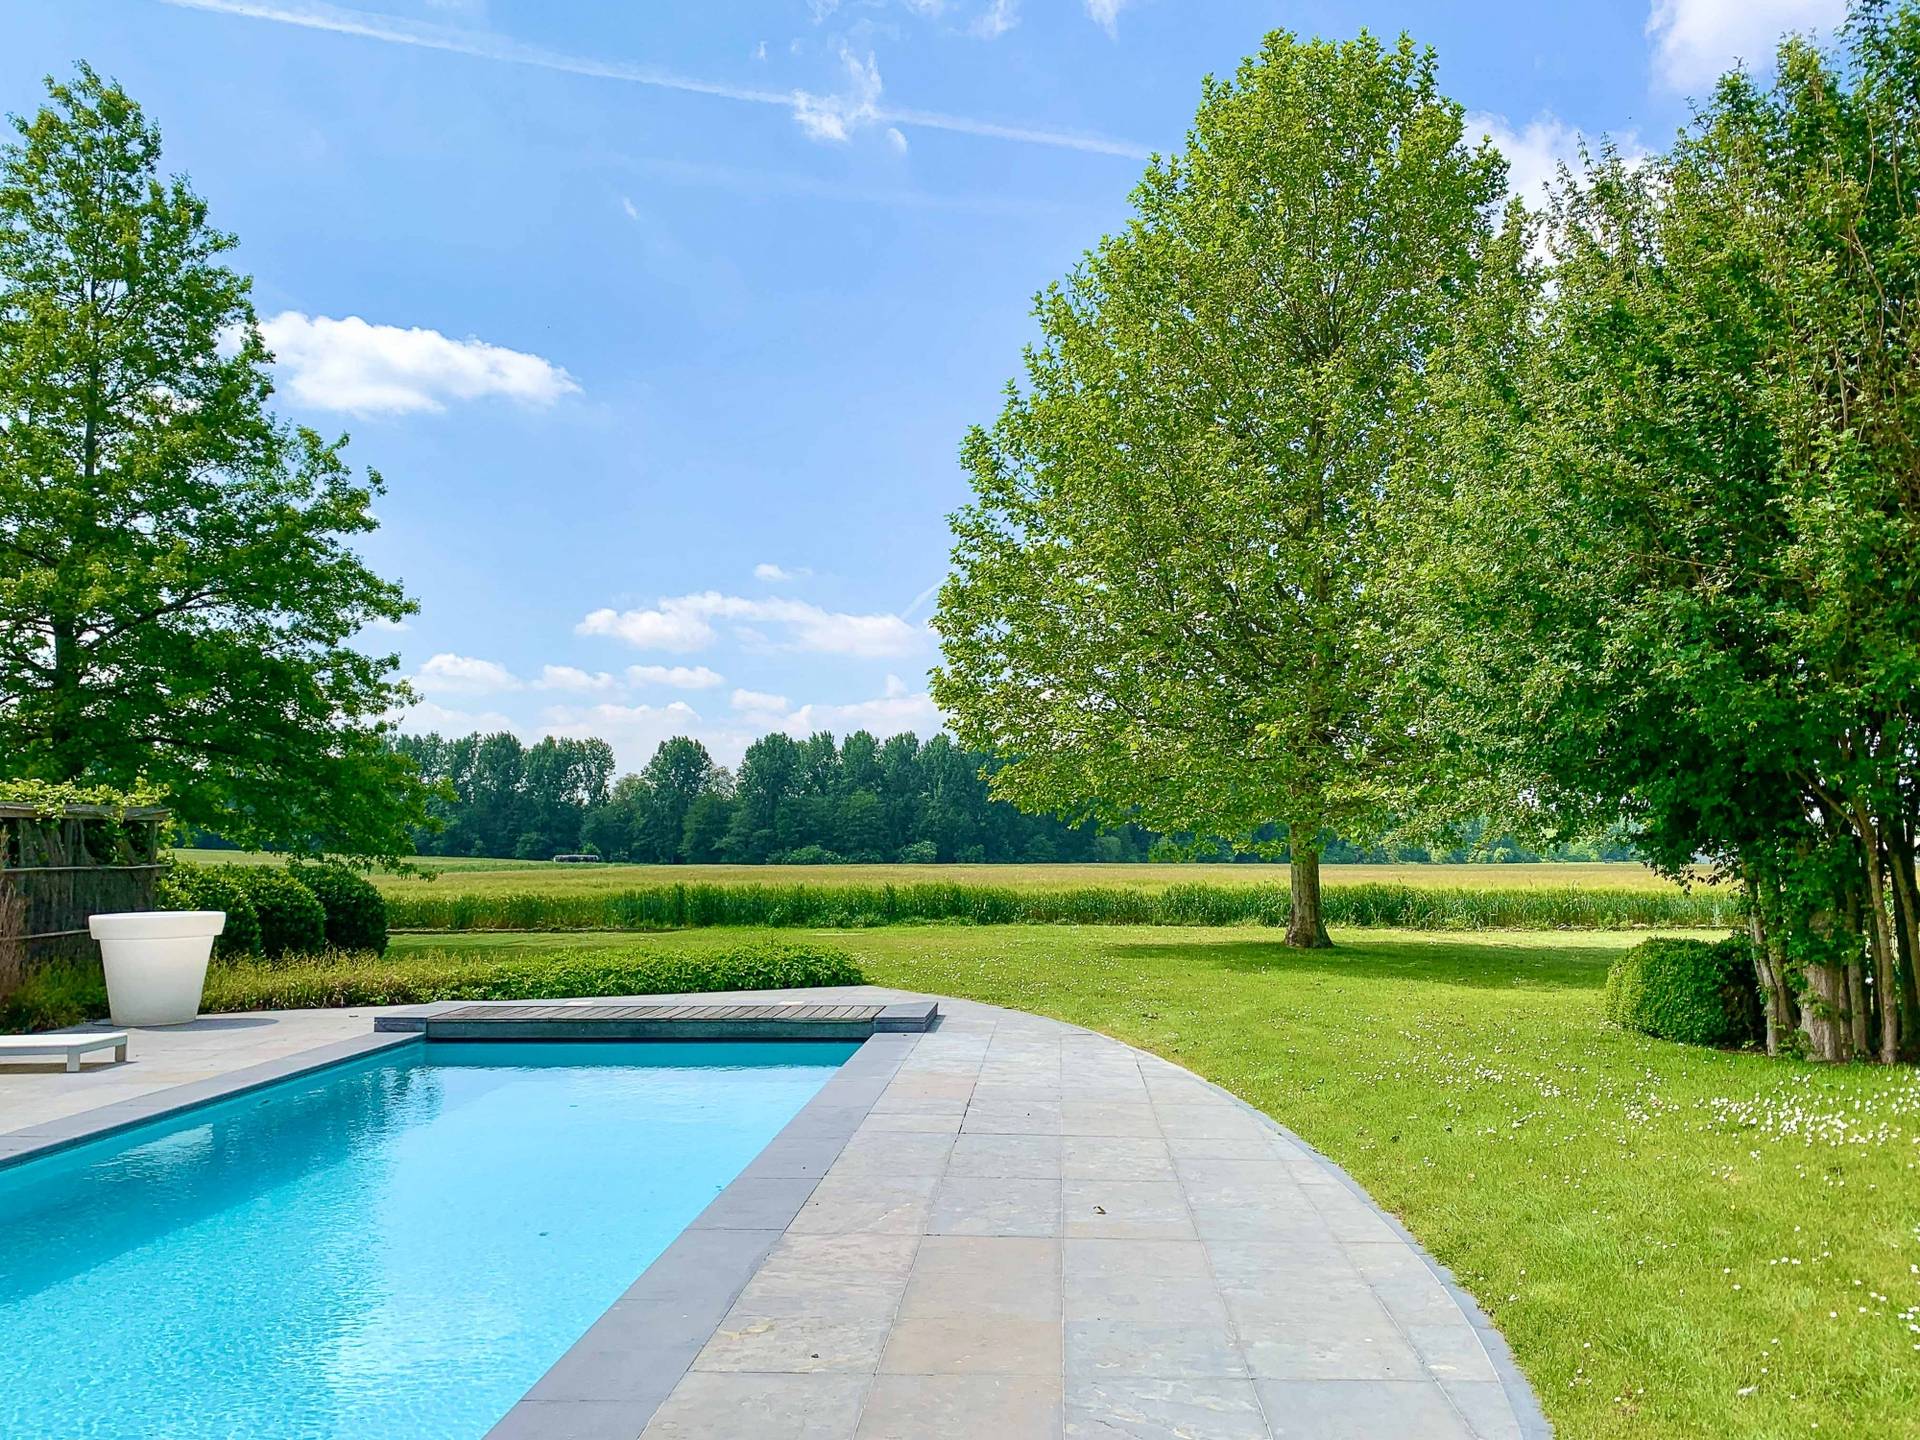 VERKOOP Villa 3+ SLPK Merelbeke - Alleenstaande villa met zwembad / zicht op groene zone